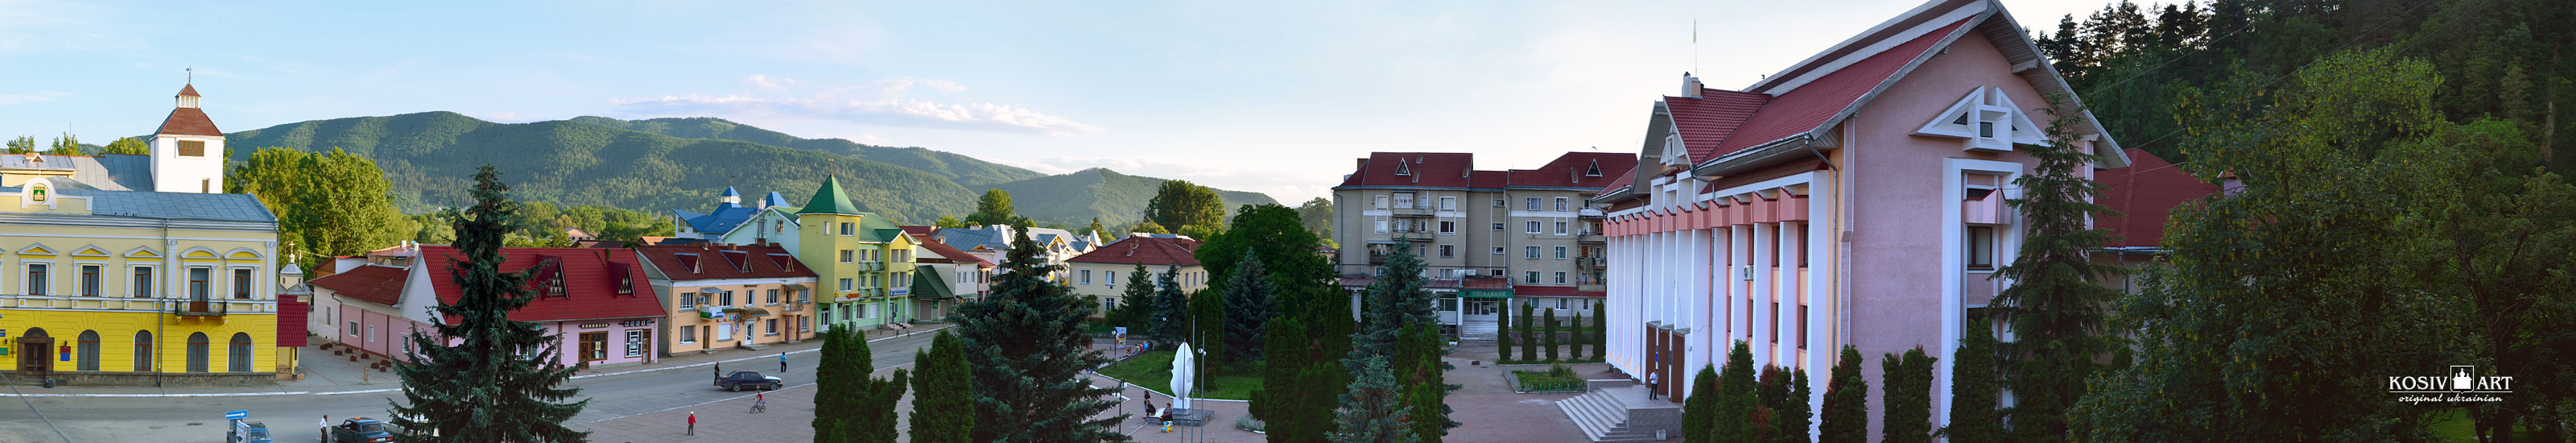 kosiv square mountains